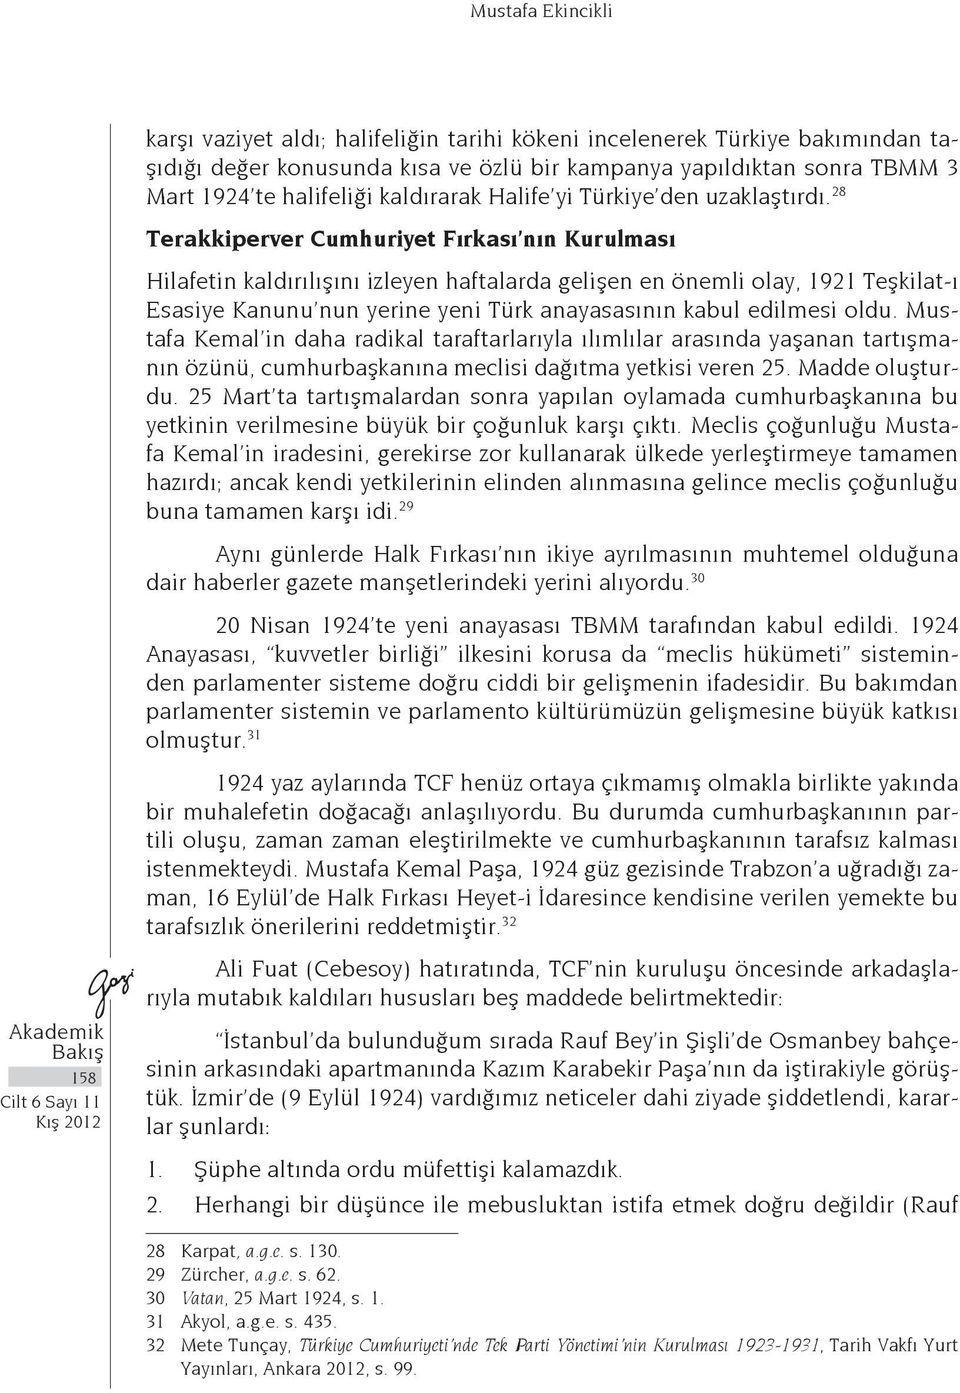 28 Terakkiperver Cumhuriyet Fırkası nın Kurulması Hilafetin kaldırılışını izleyen haftalarda gelişen en önemli olay, 1921 Teşkilat-ı Esasiye Kanunu nun yerine yeni Türk anayasasının kabul edilmesi